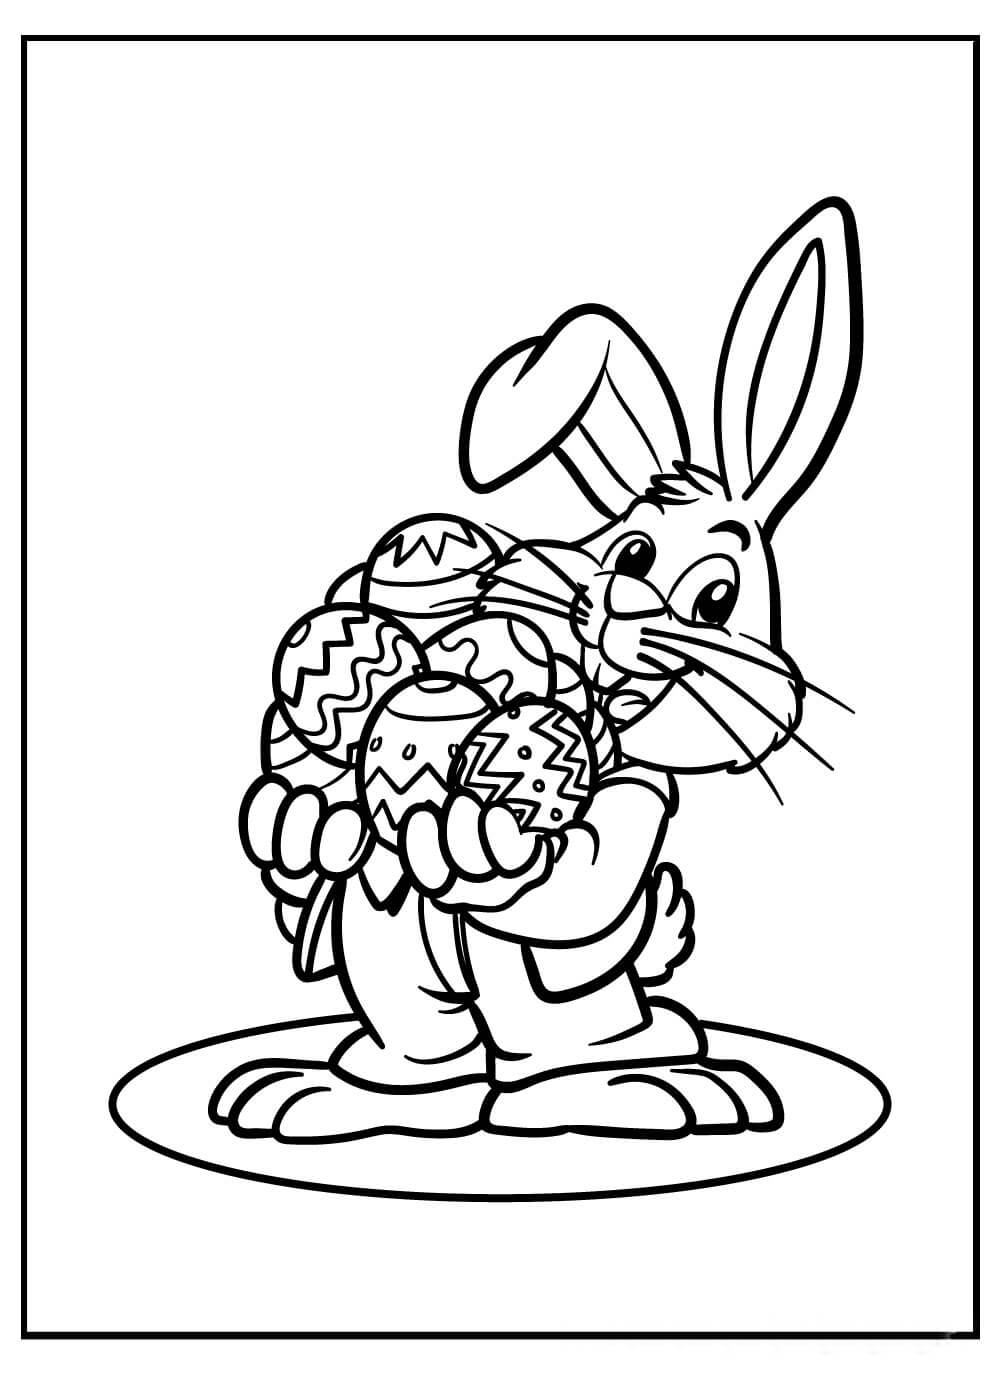 Bugs Bunny Sosteniendo huevos de Pascua